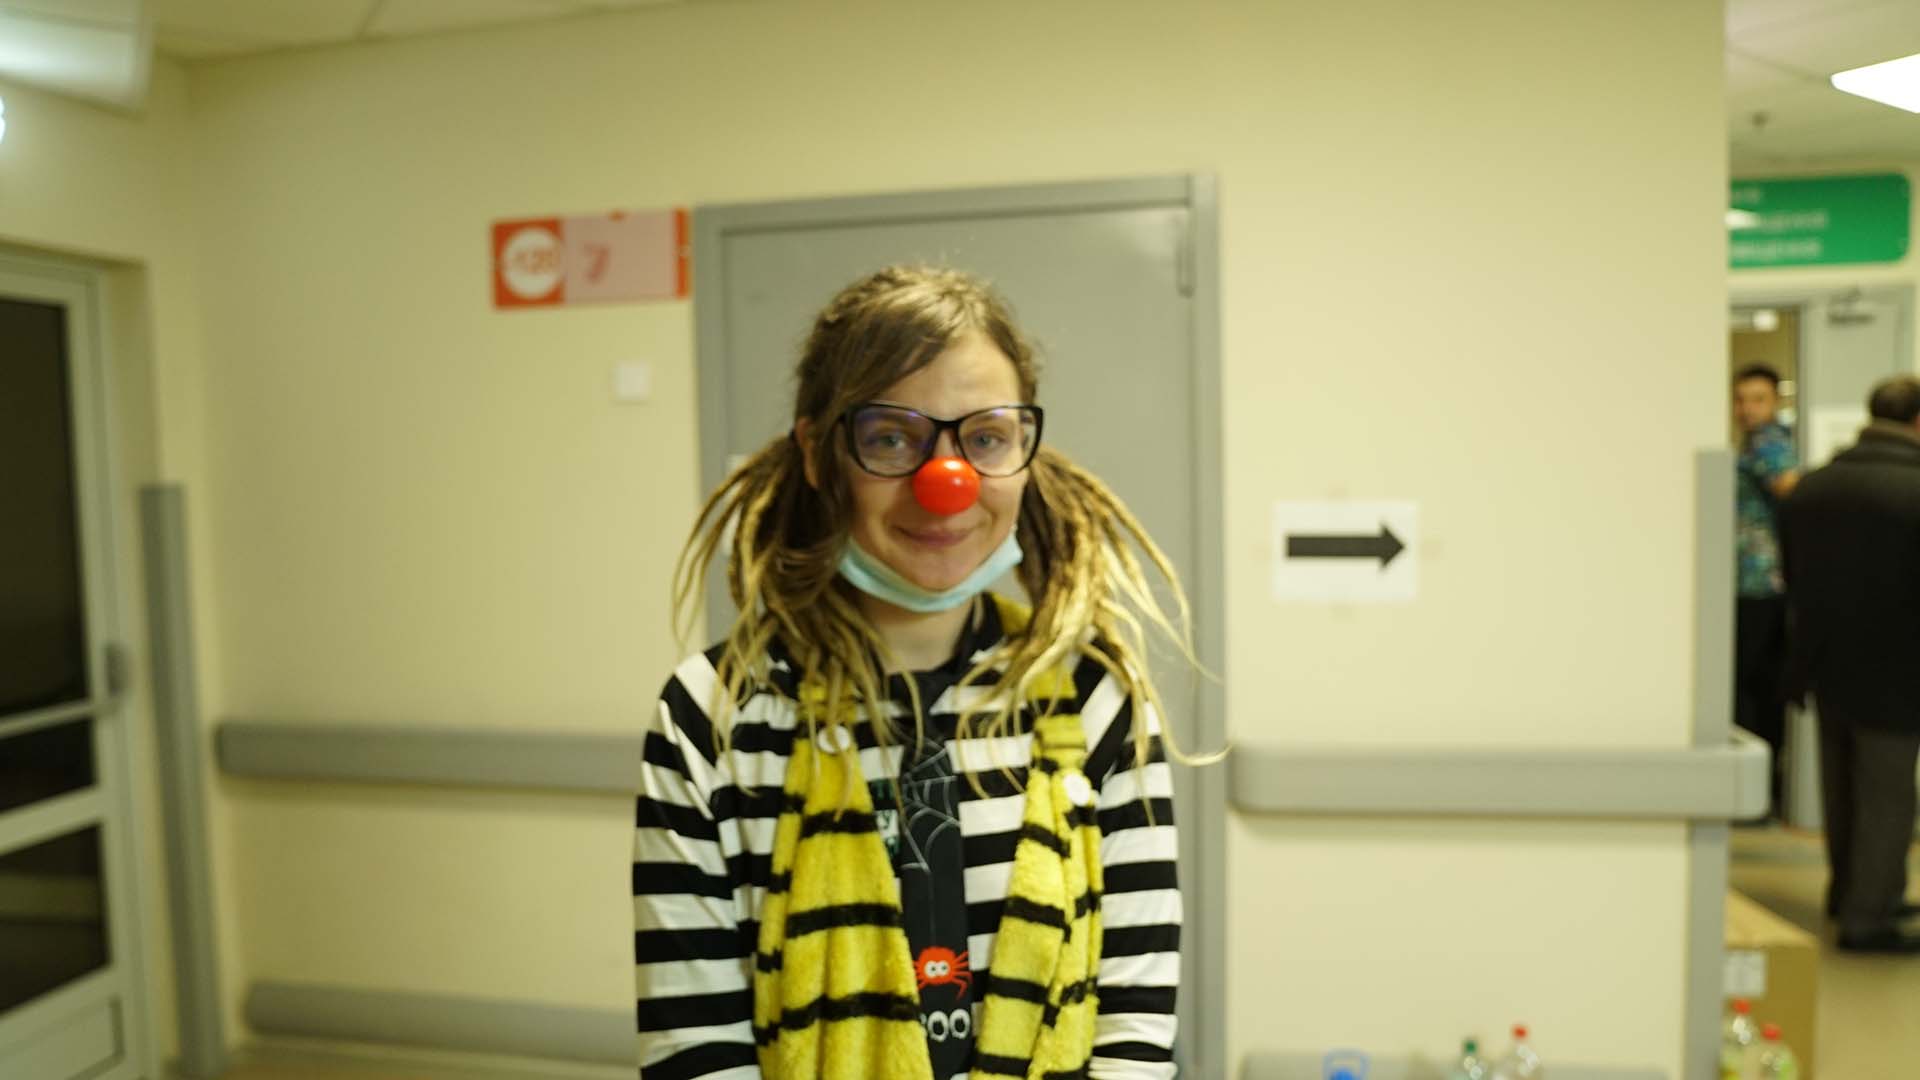 Una de las actividades principales de las clown en el hospital es jugar a las escondidas. Dicen que gracias a eso los chicos se amigan con el hecho de vivir bajo tierra